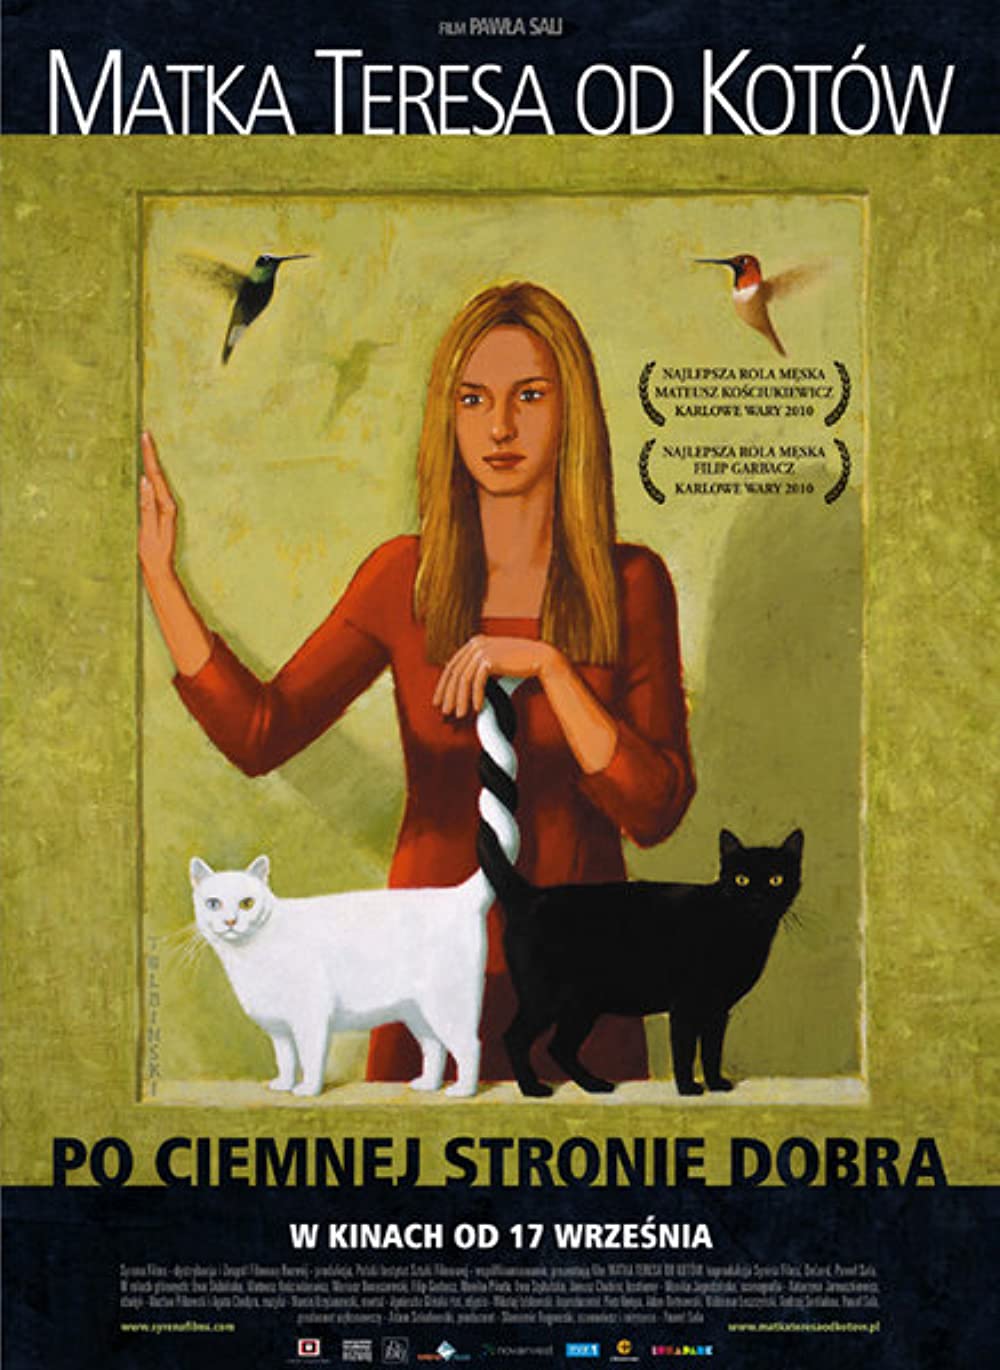 Download Matka Teresa od kotów Movie | Matka Teresa Od Kotów